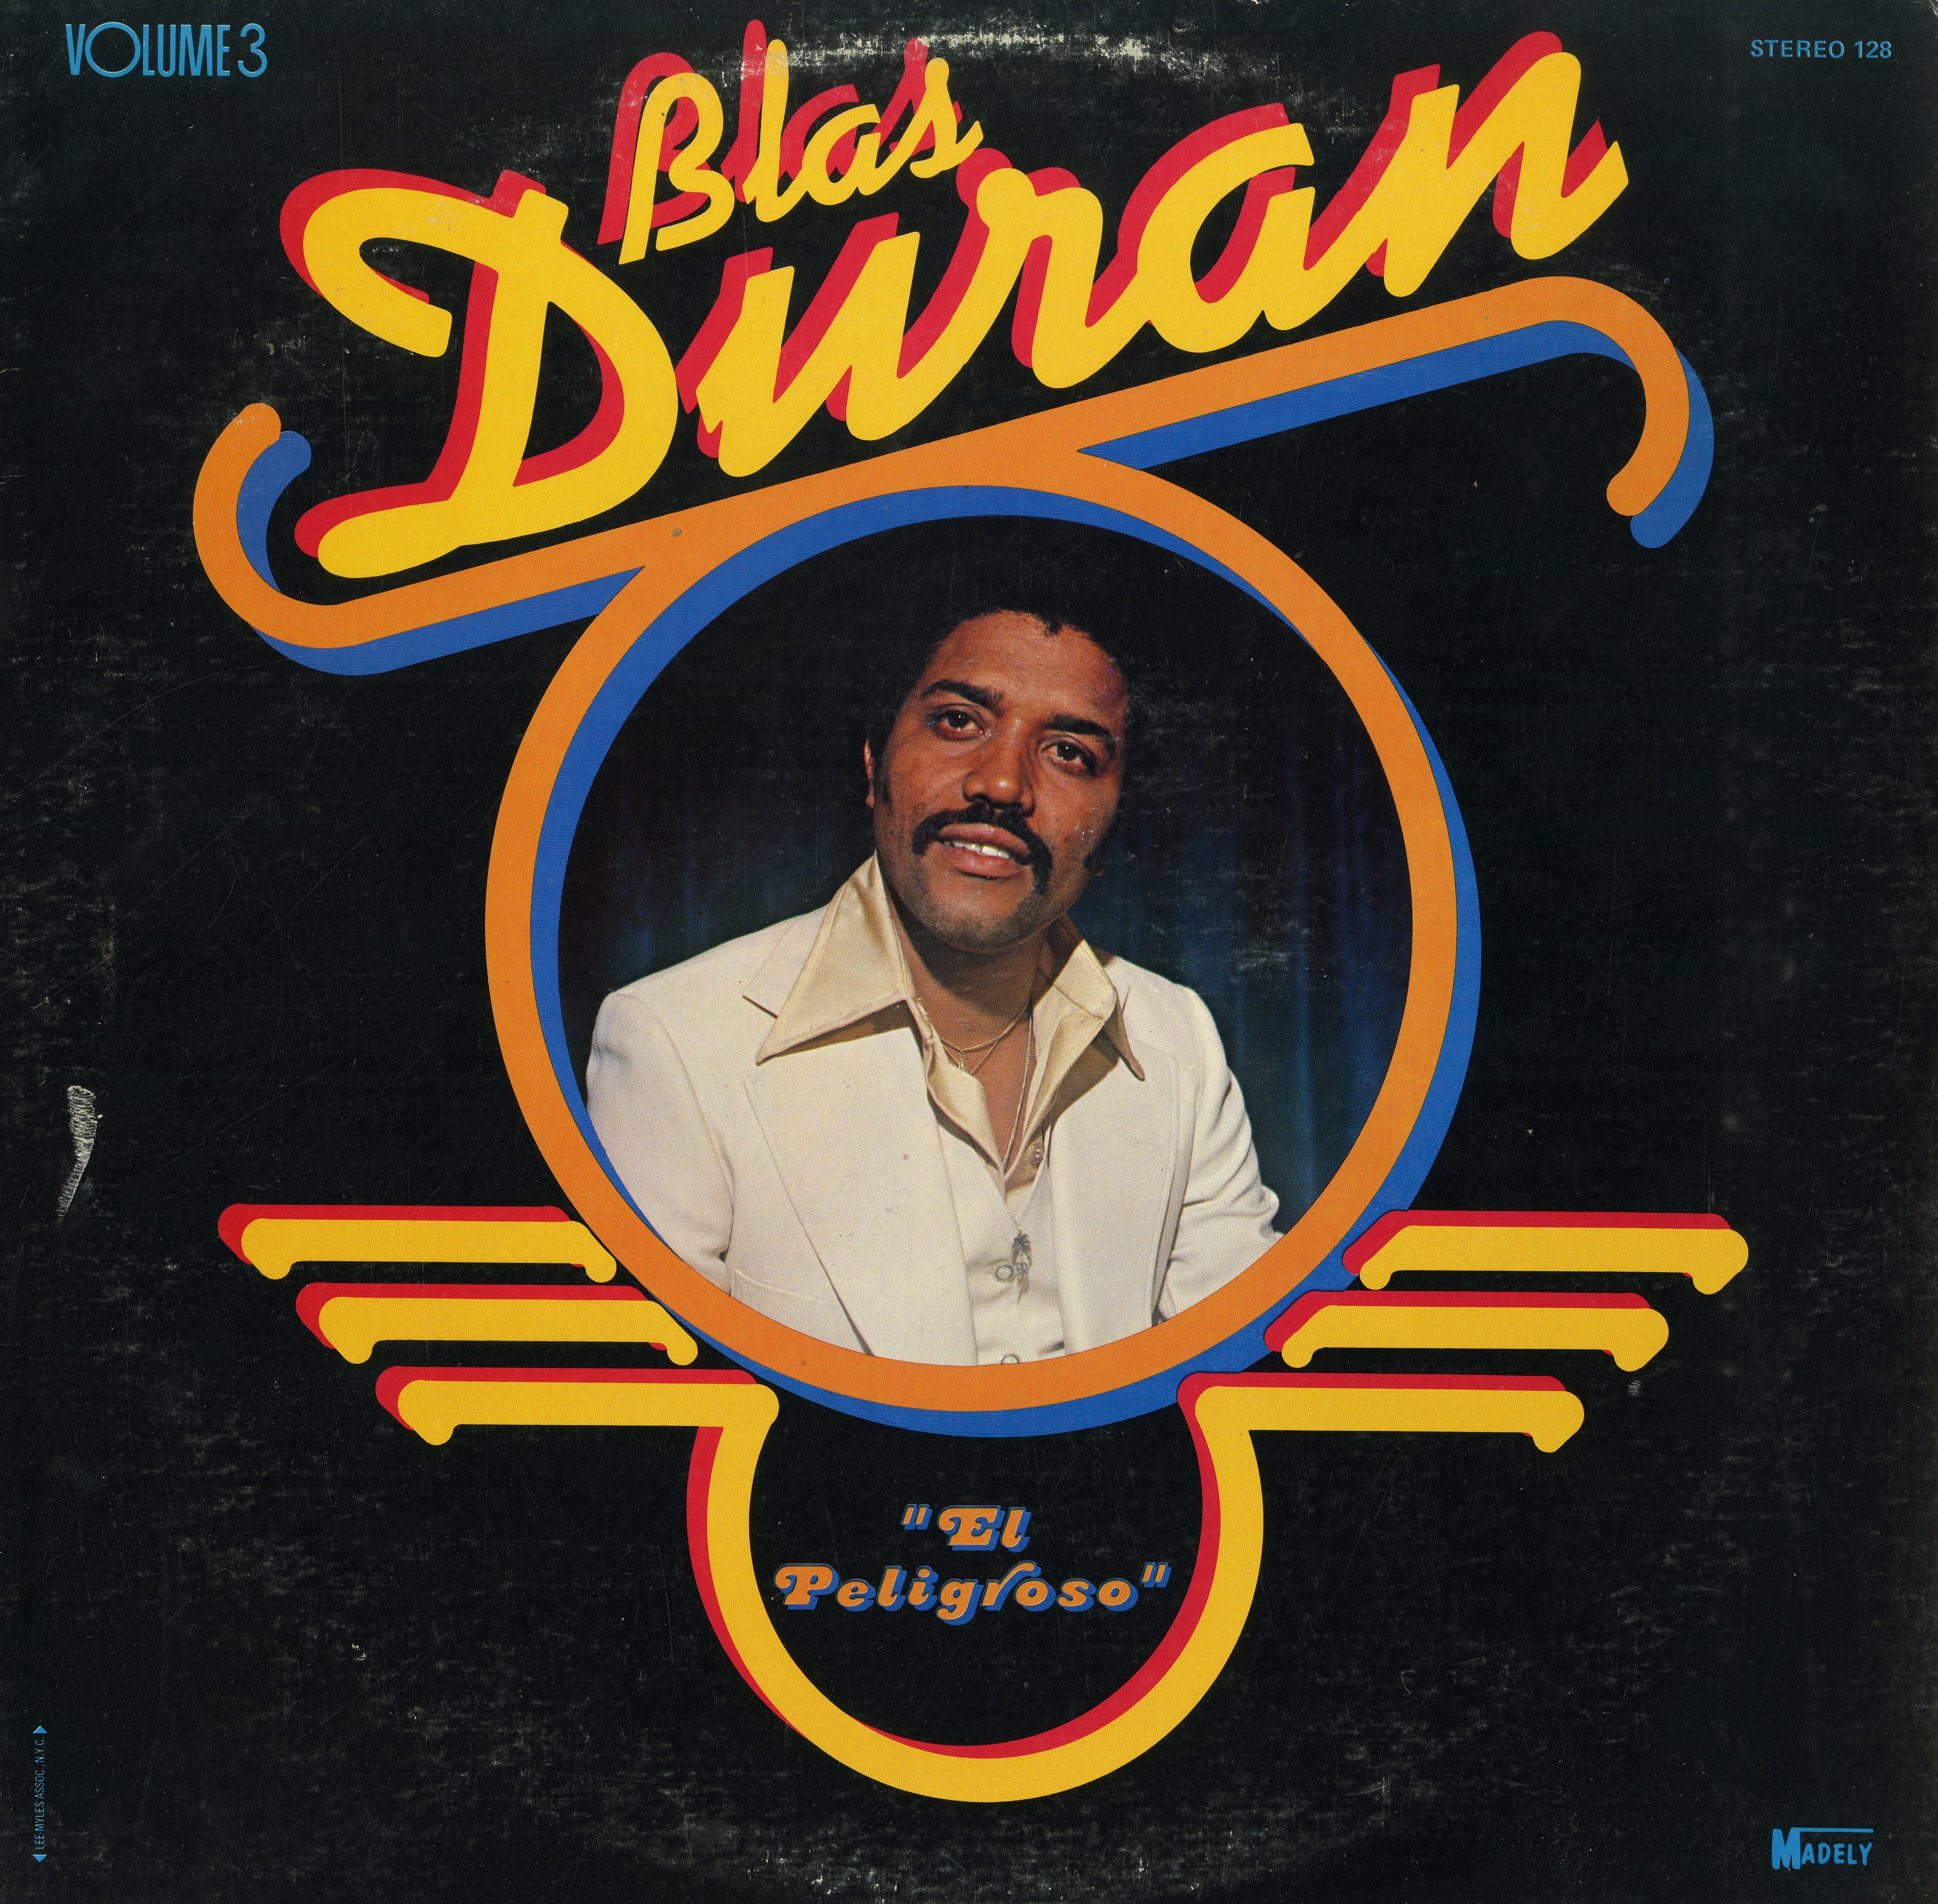 Blas Duran "El Peligroso" LP album cover, 1978